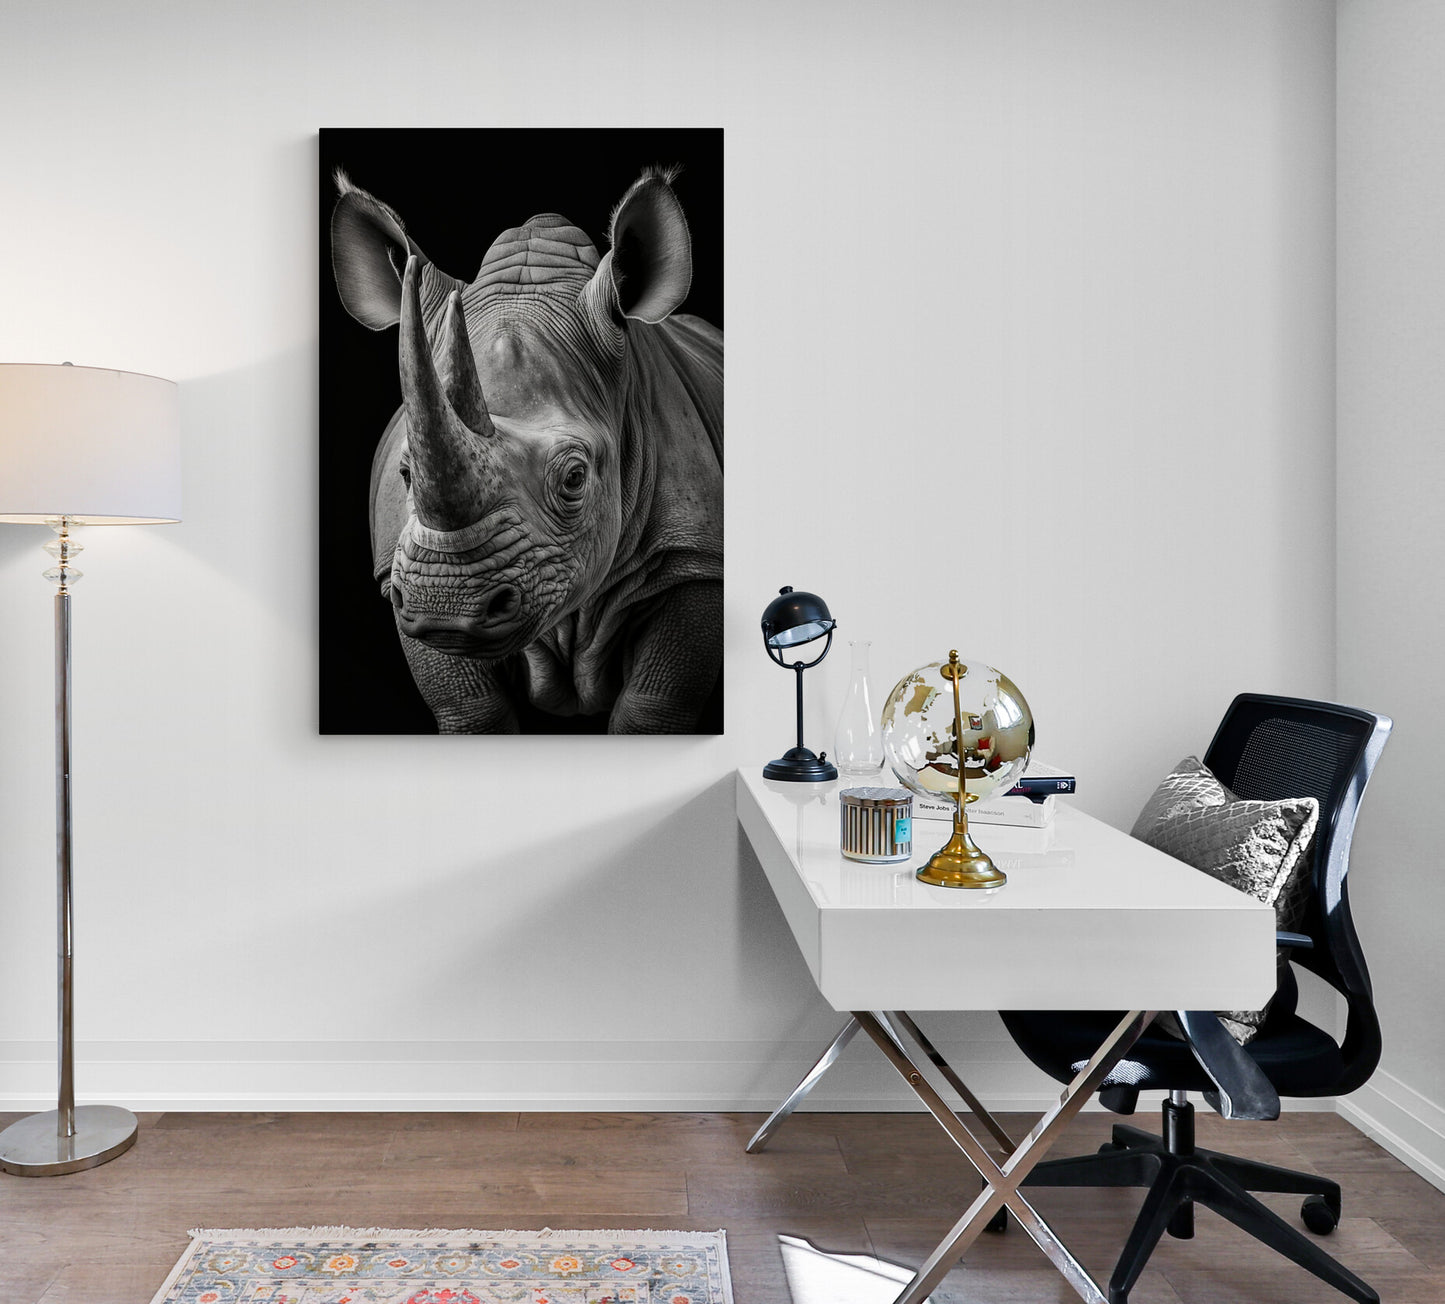 Tableau décoratif du rhinocéros, photographie noir et blanc en gros plan, animal majestueux, dans un bureau